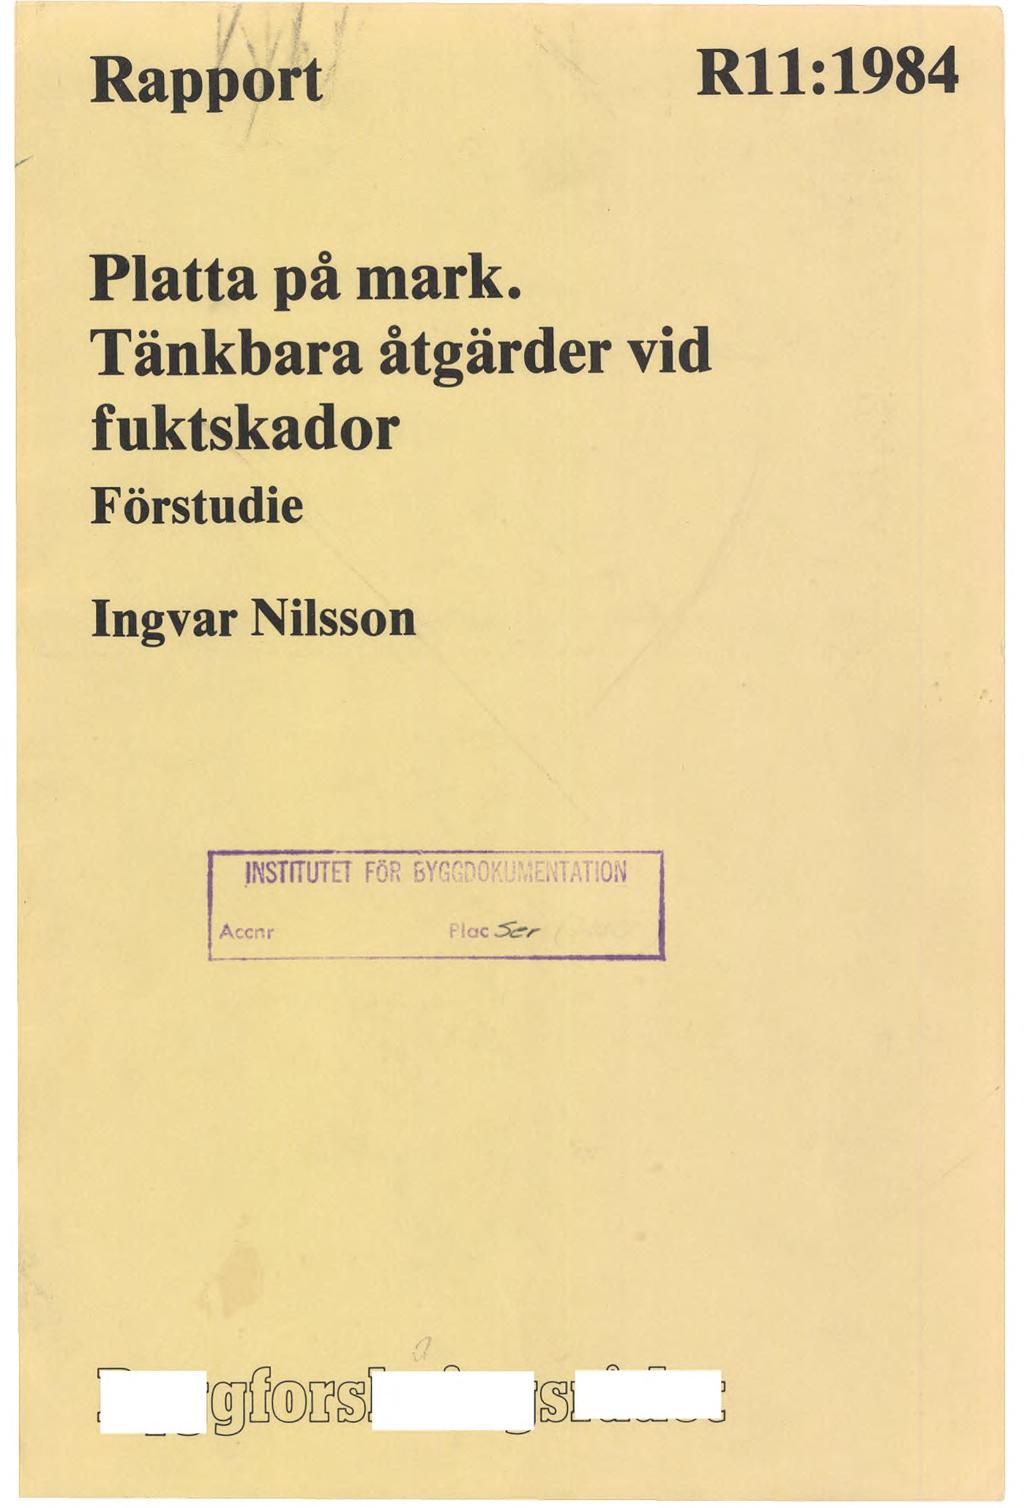 Rapport Rll:1984 Platta på mark.